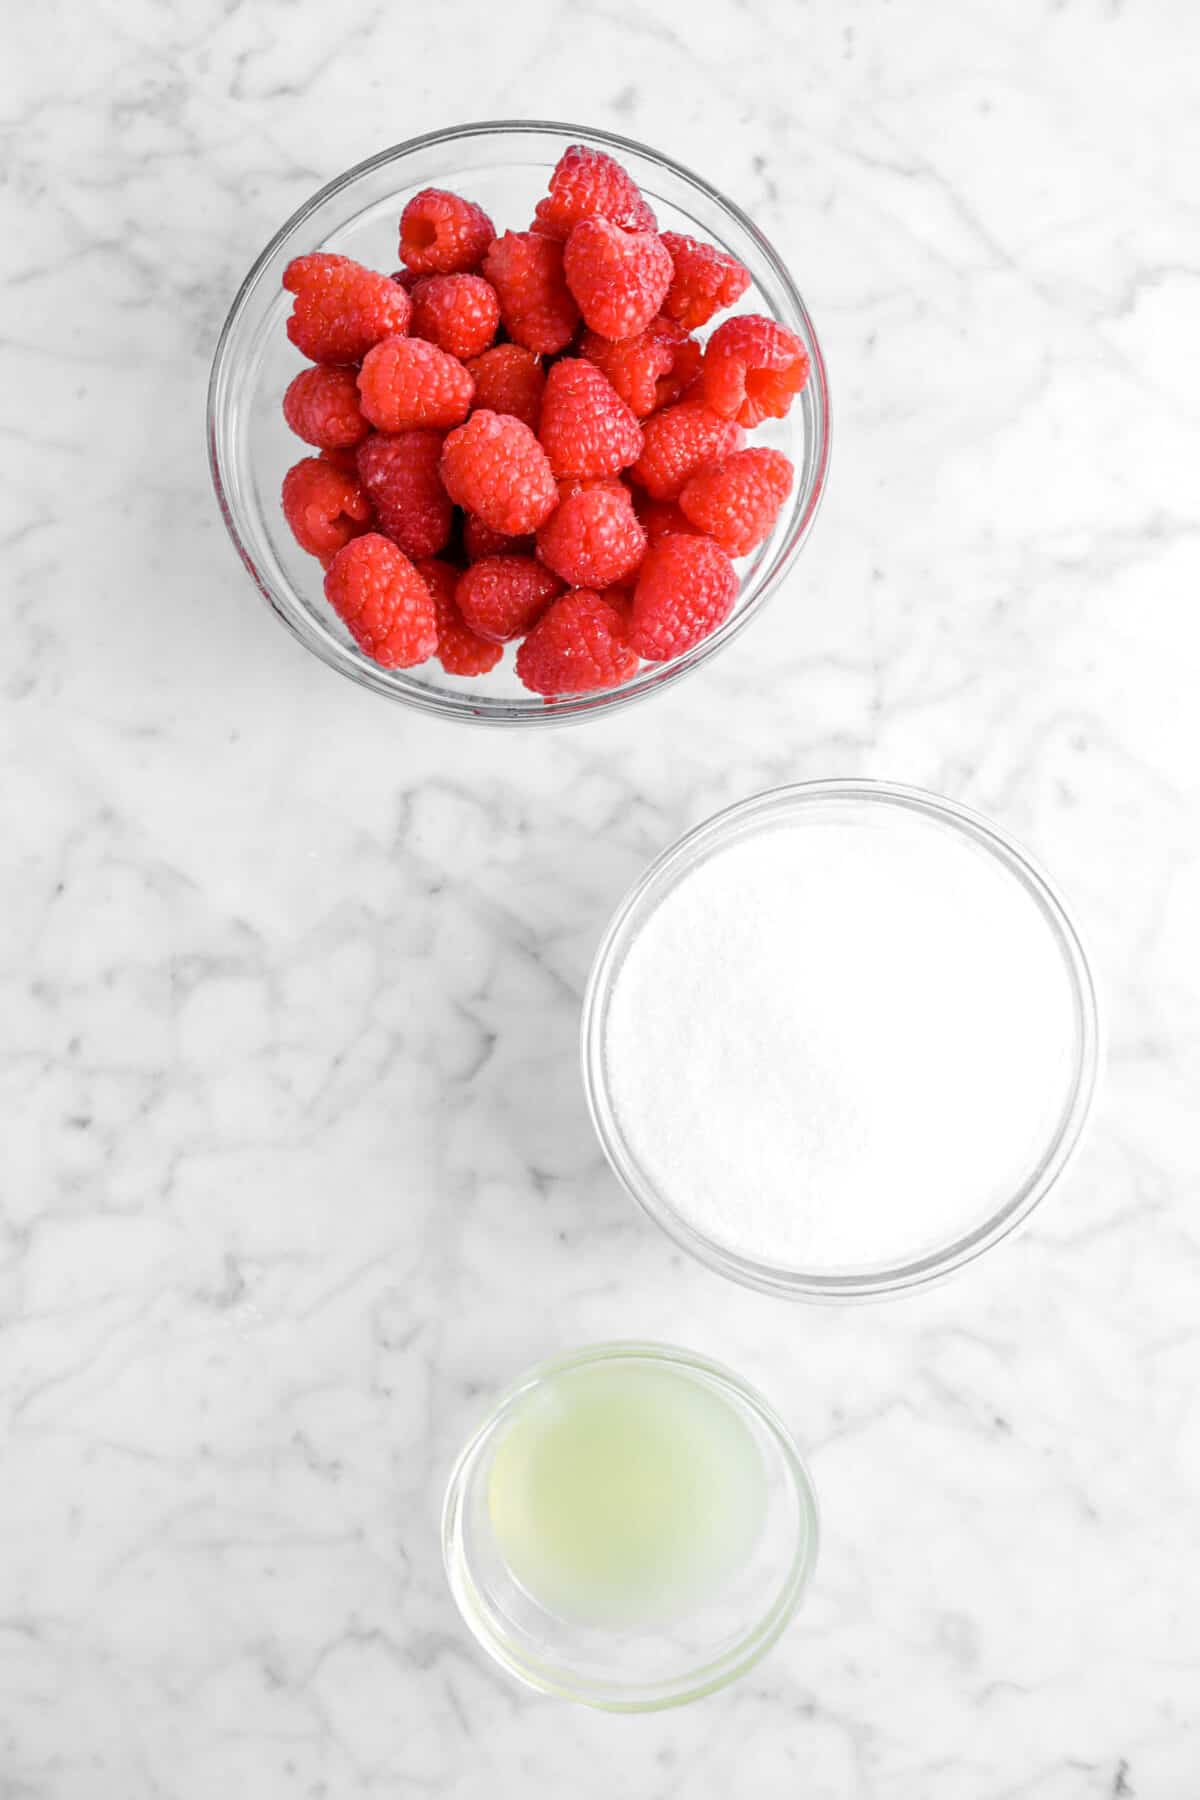 raspberries, sugar, and lemon juice in glass bowls